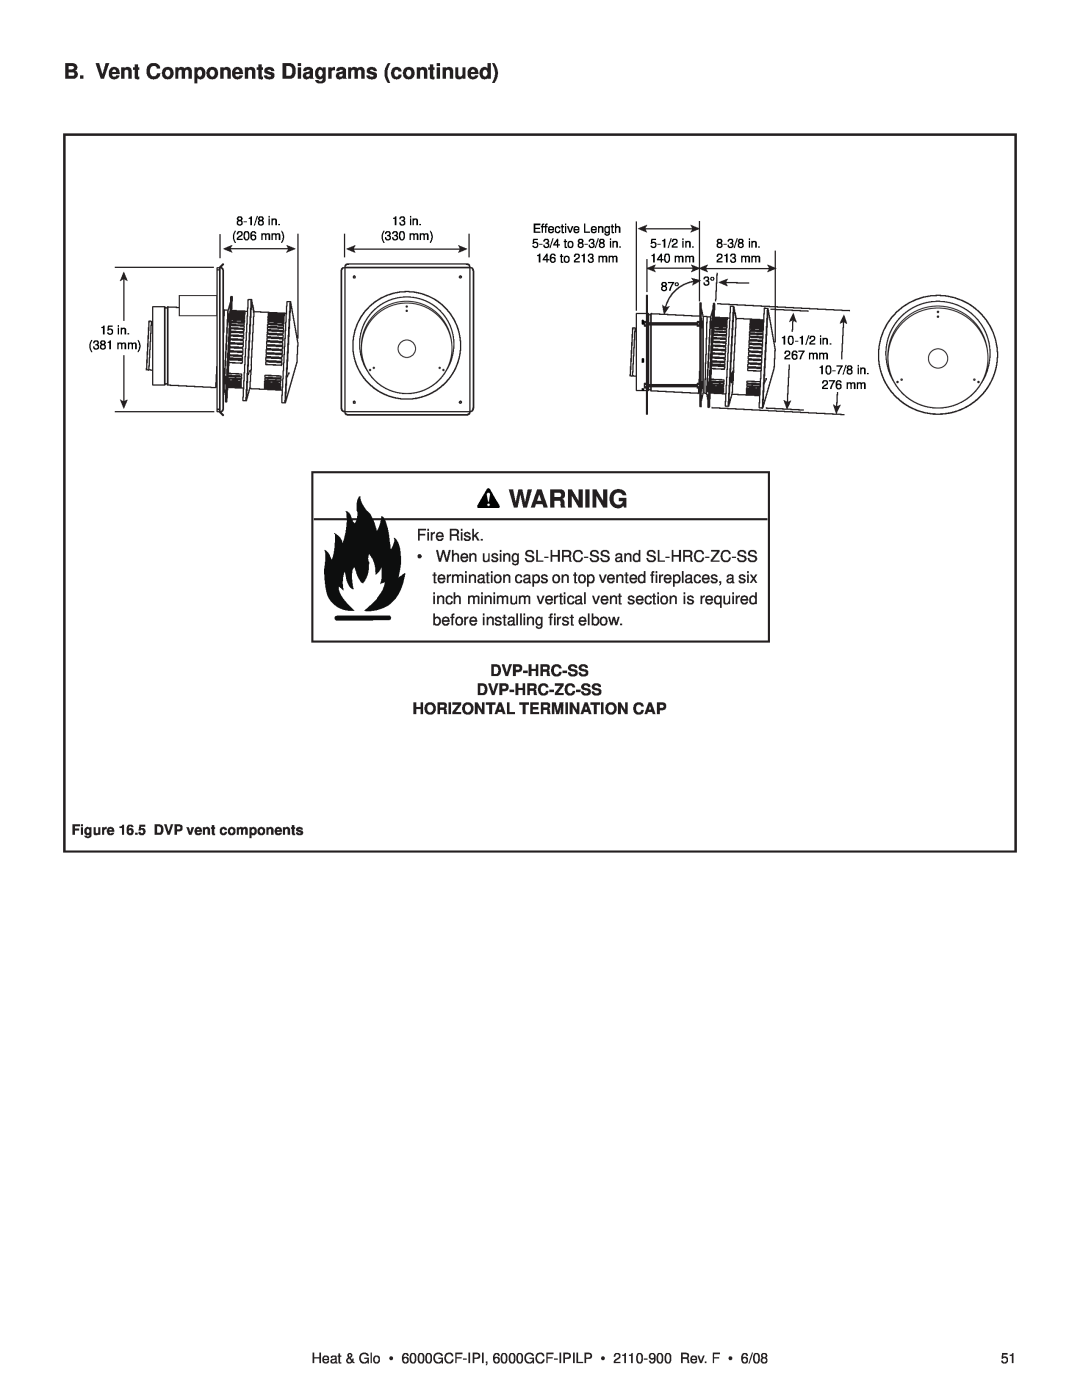 Heat & Glo LifeStyle 6000GCF-IPILP B. Vent Components Diagrams continued, Fire Risk, Dvp-Hrc-Ss Dvp-Hrc-Zc-Ss 